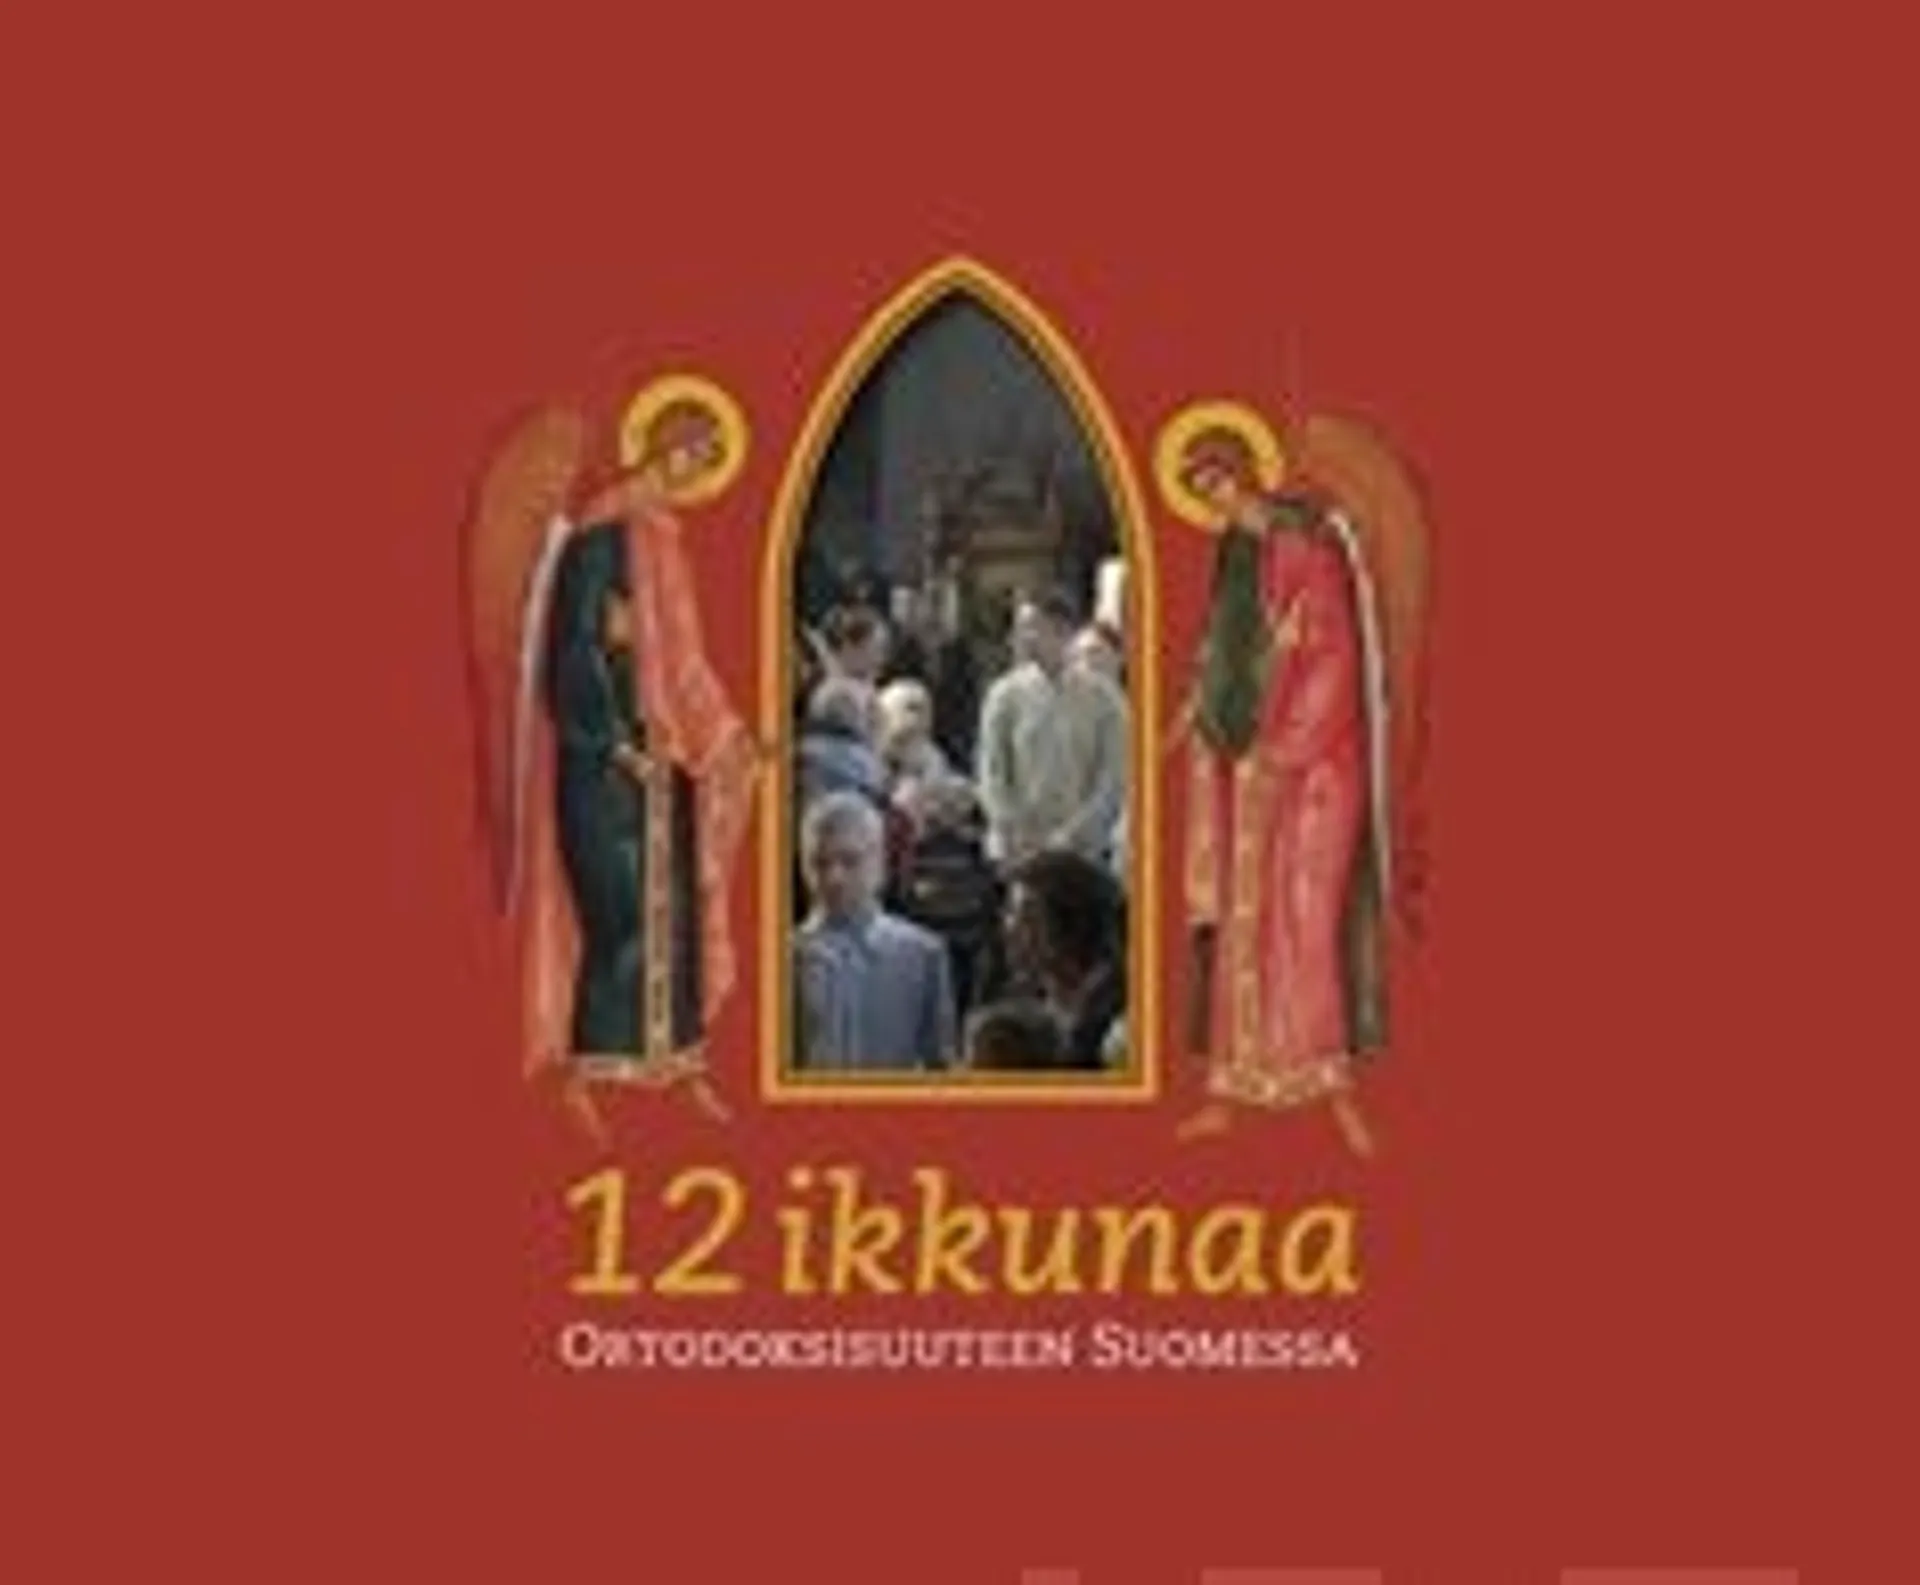 12 ikkunaa ortodoksisuuteen Suomessa